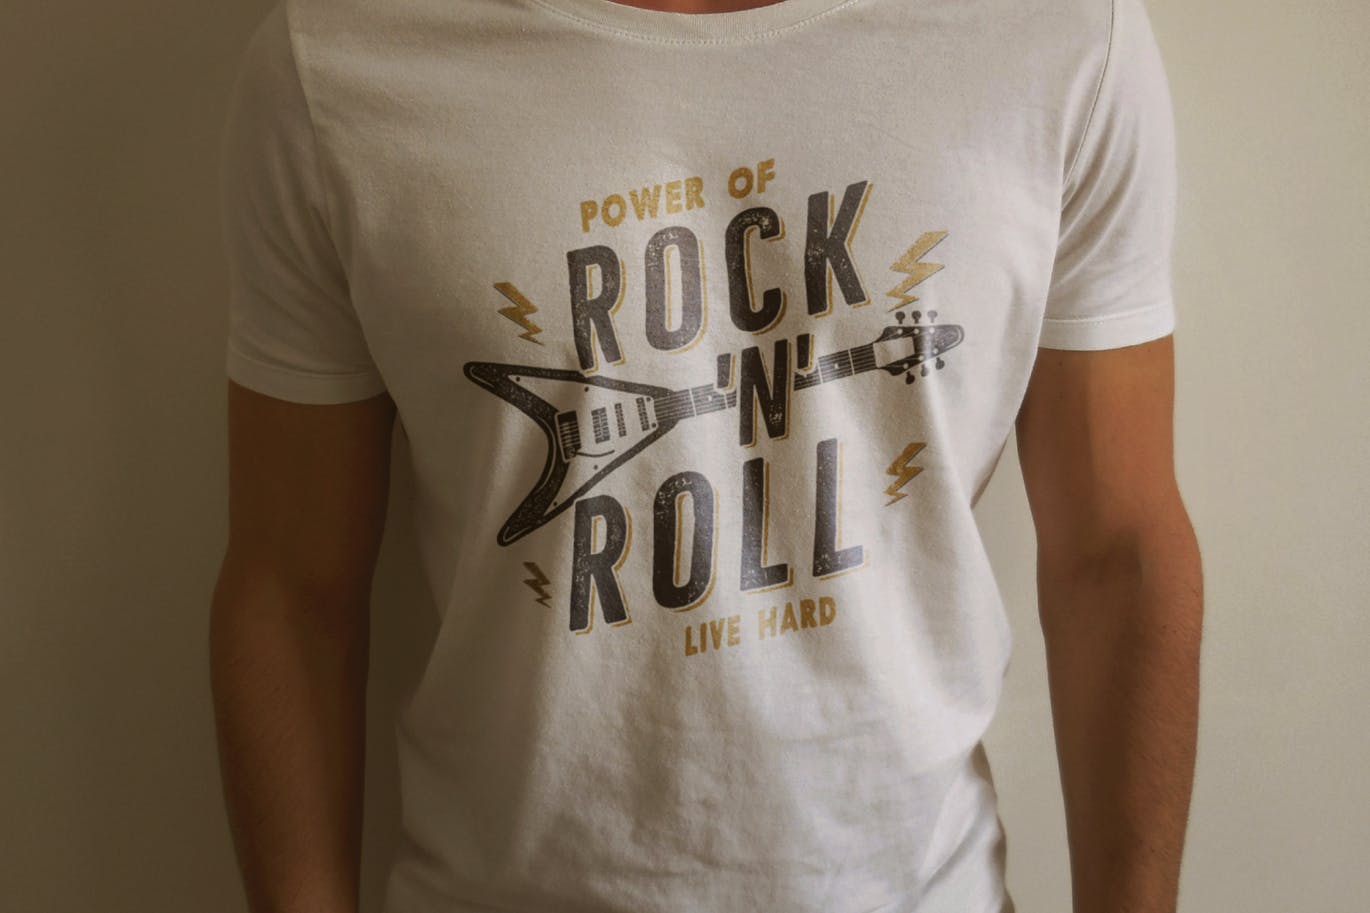 T恤复古设计风格摇滚音乐主题印花图案插画 Music Rock n Roll Print for T-Shirt, Retro Design插图(3)